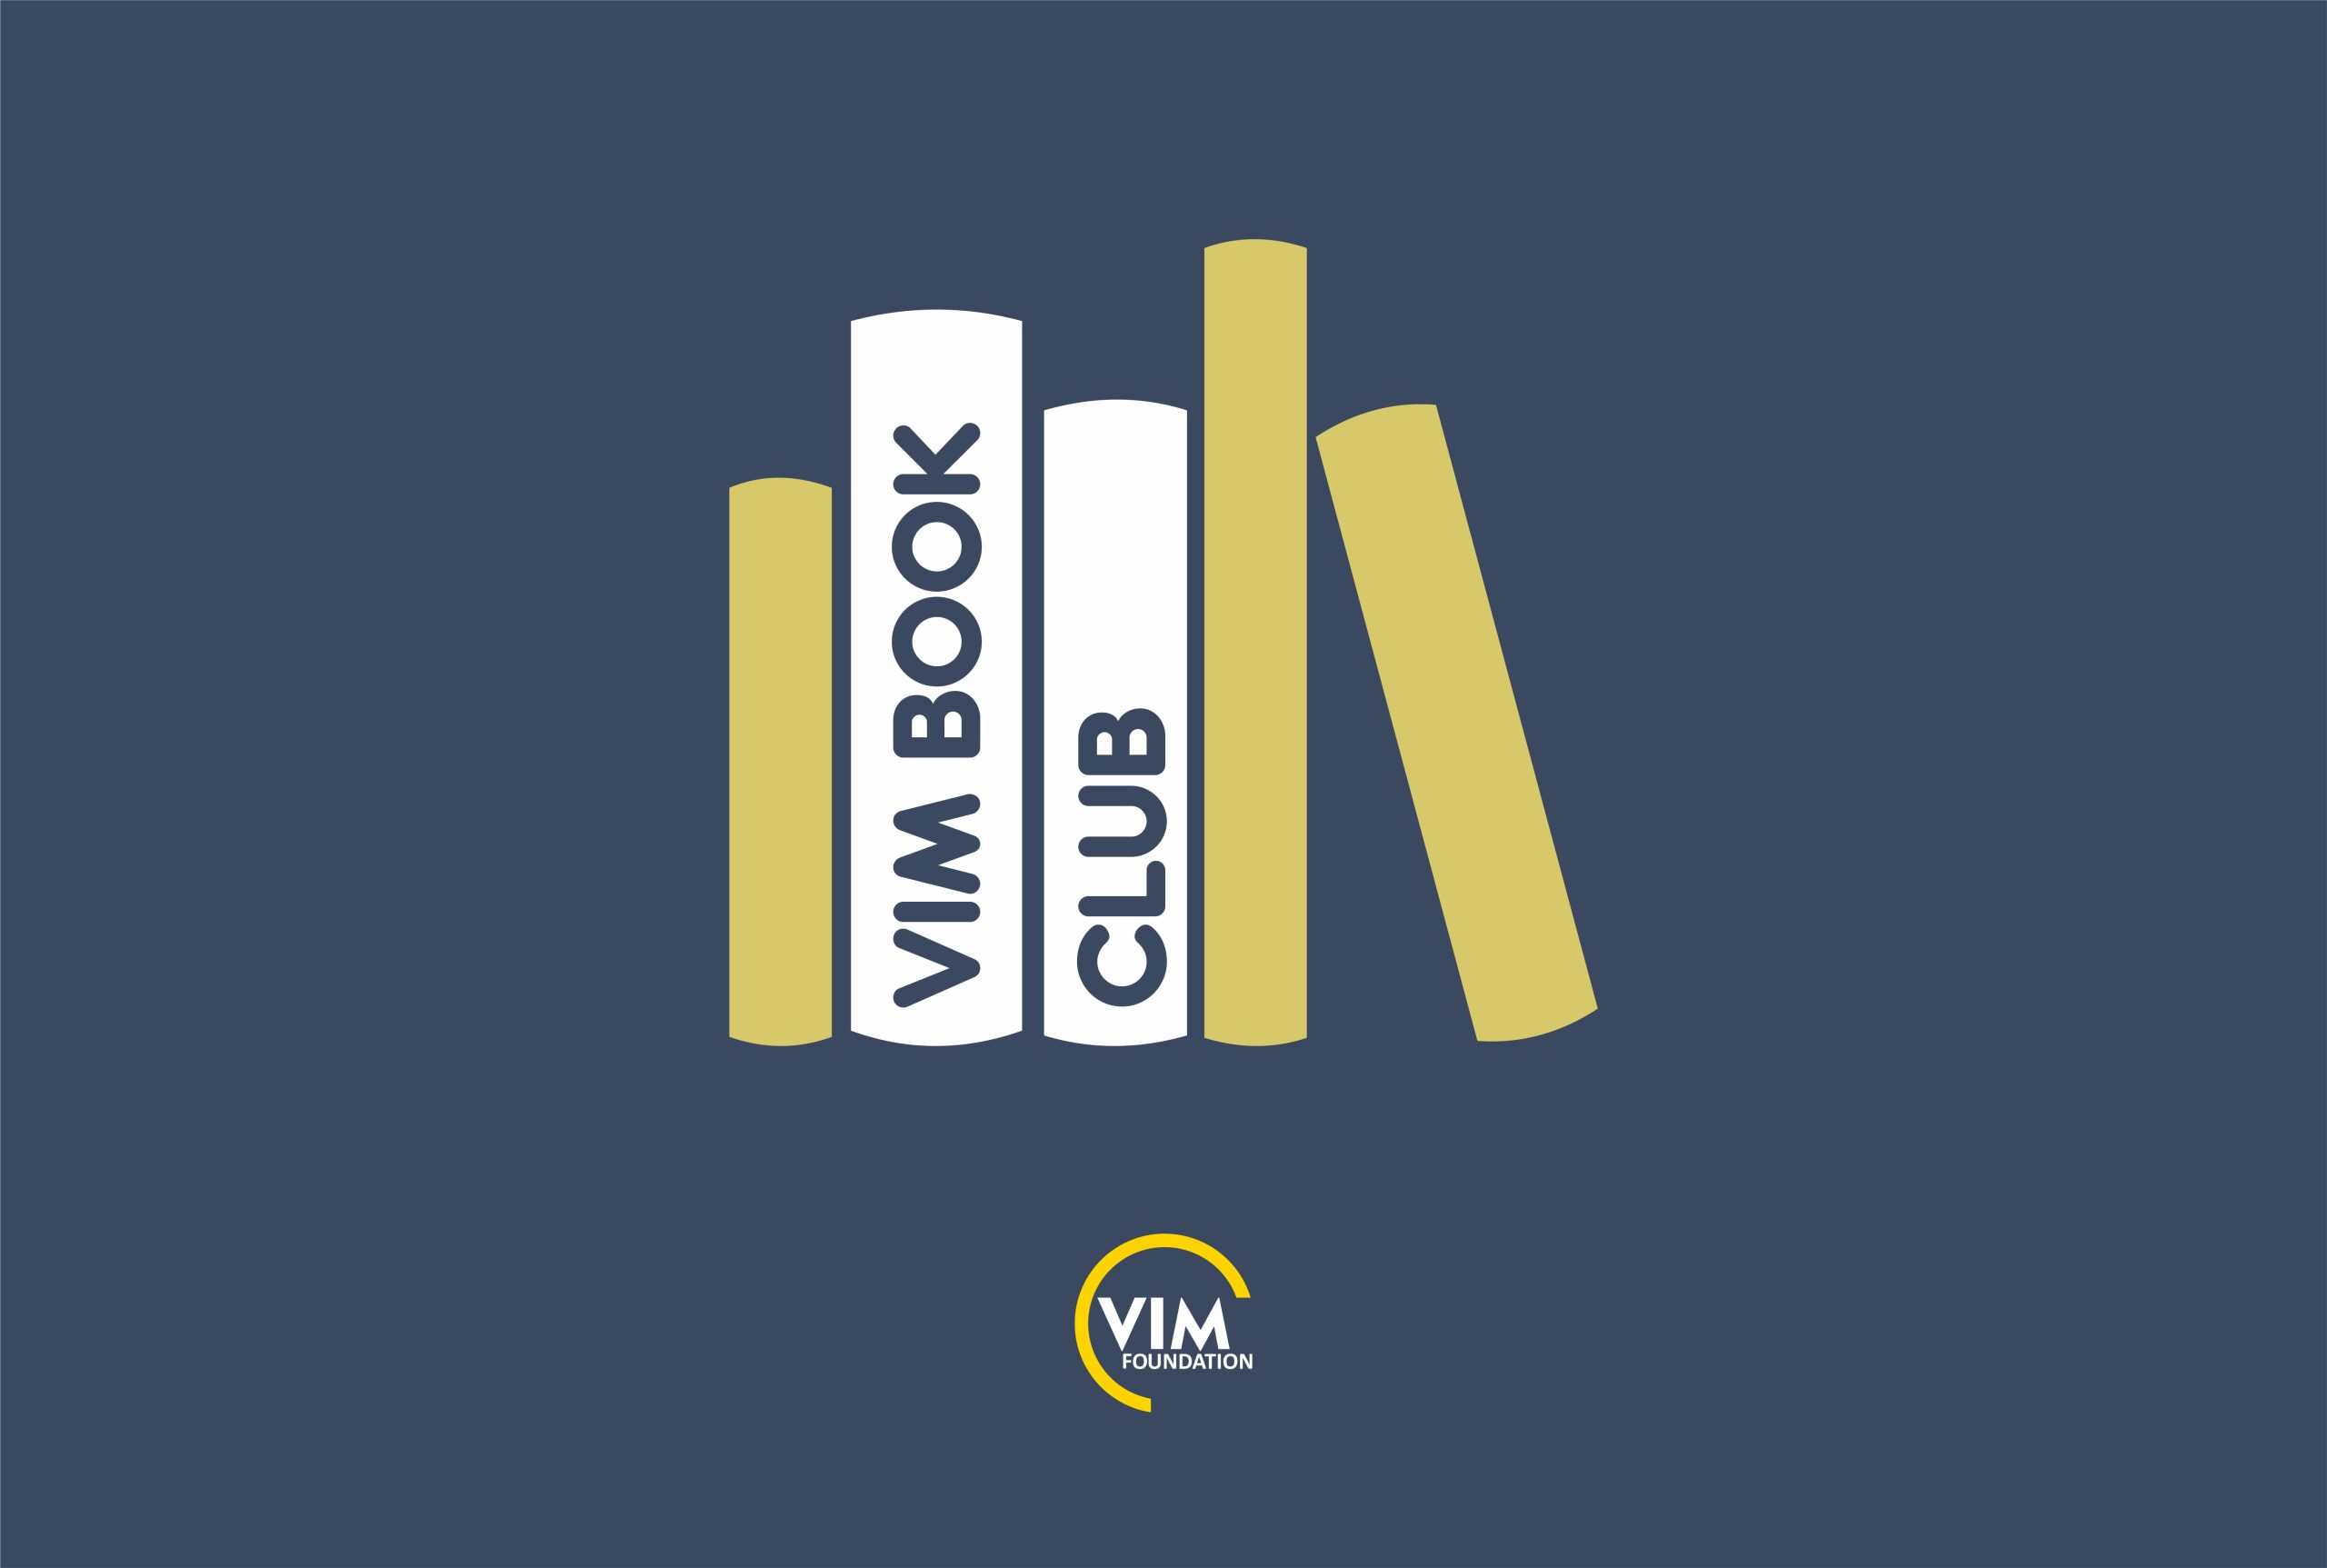 مؤسسة فيم تعلن عن مشروع VIM BOOK CLUB